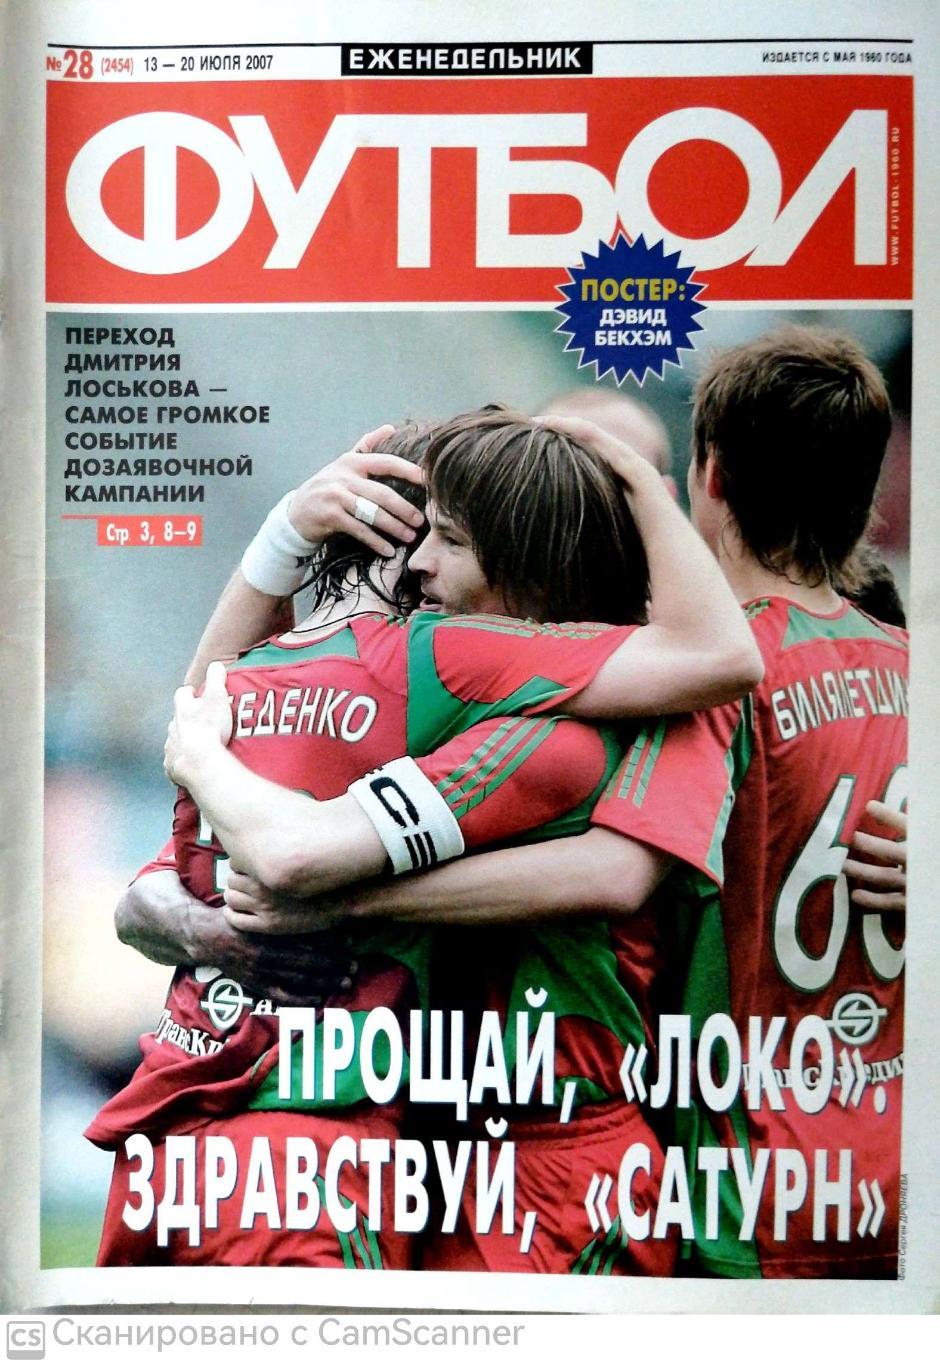 Еженедельник «Футбол» (Москва). 2007 год. №28 постер бекхэм